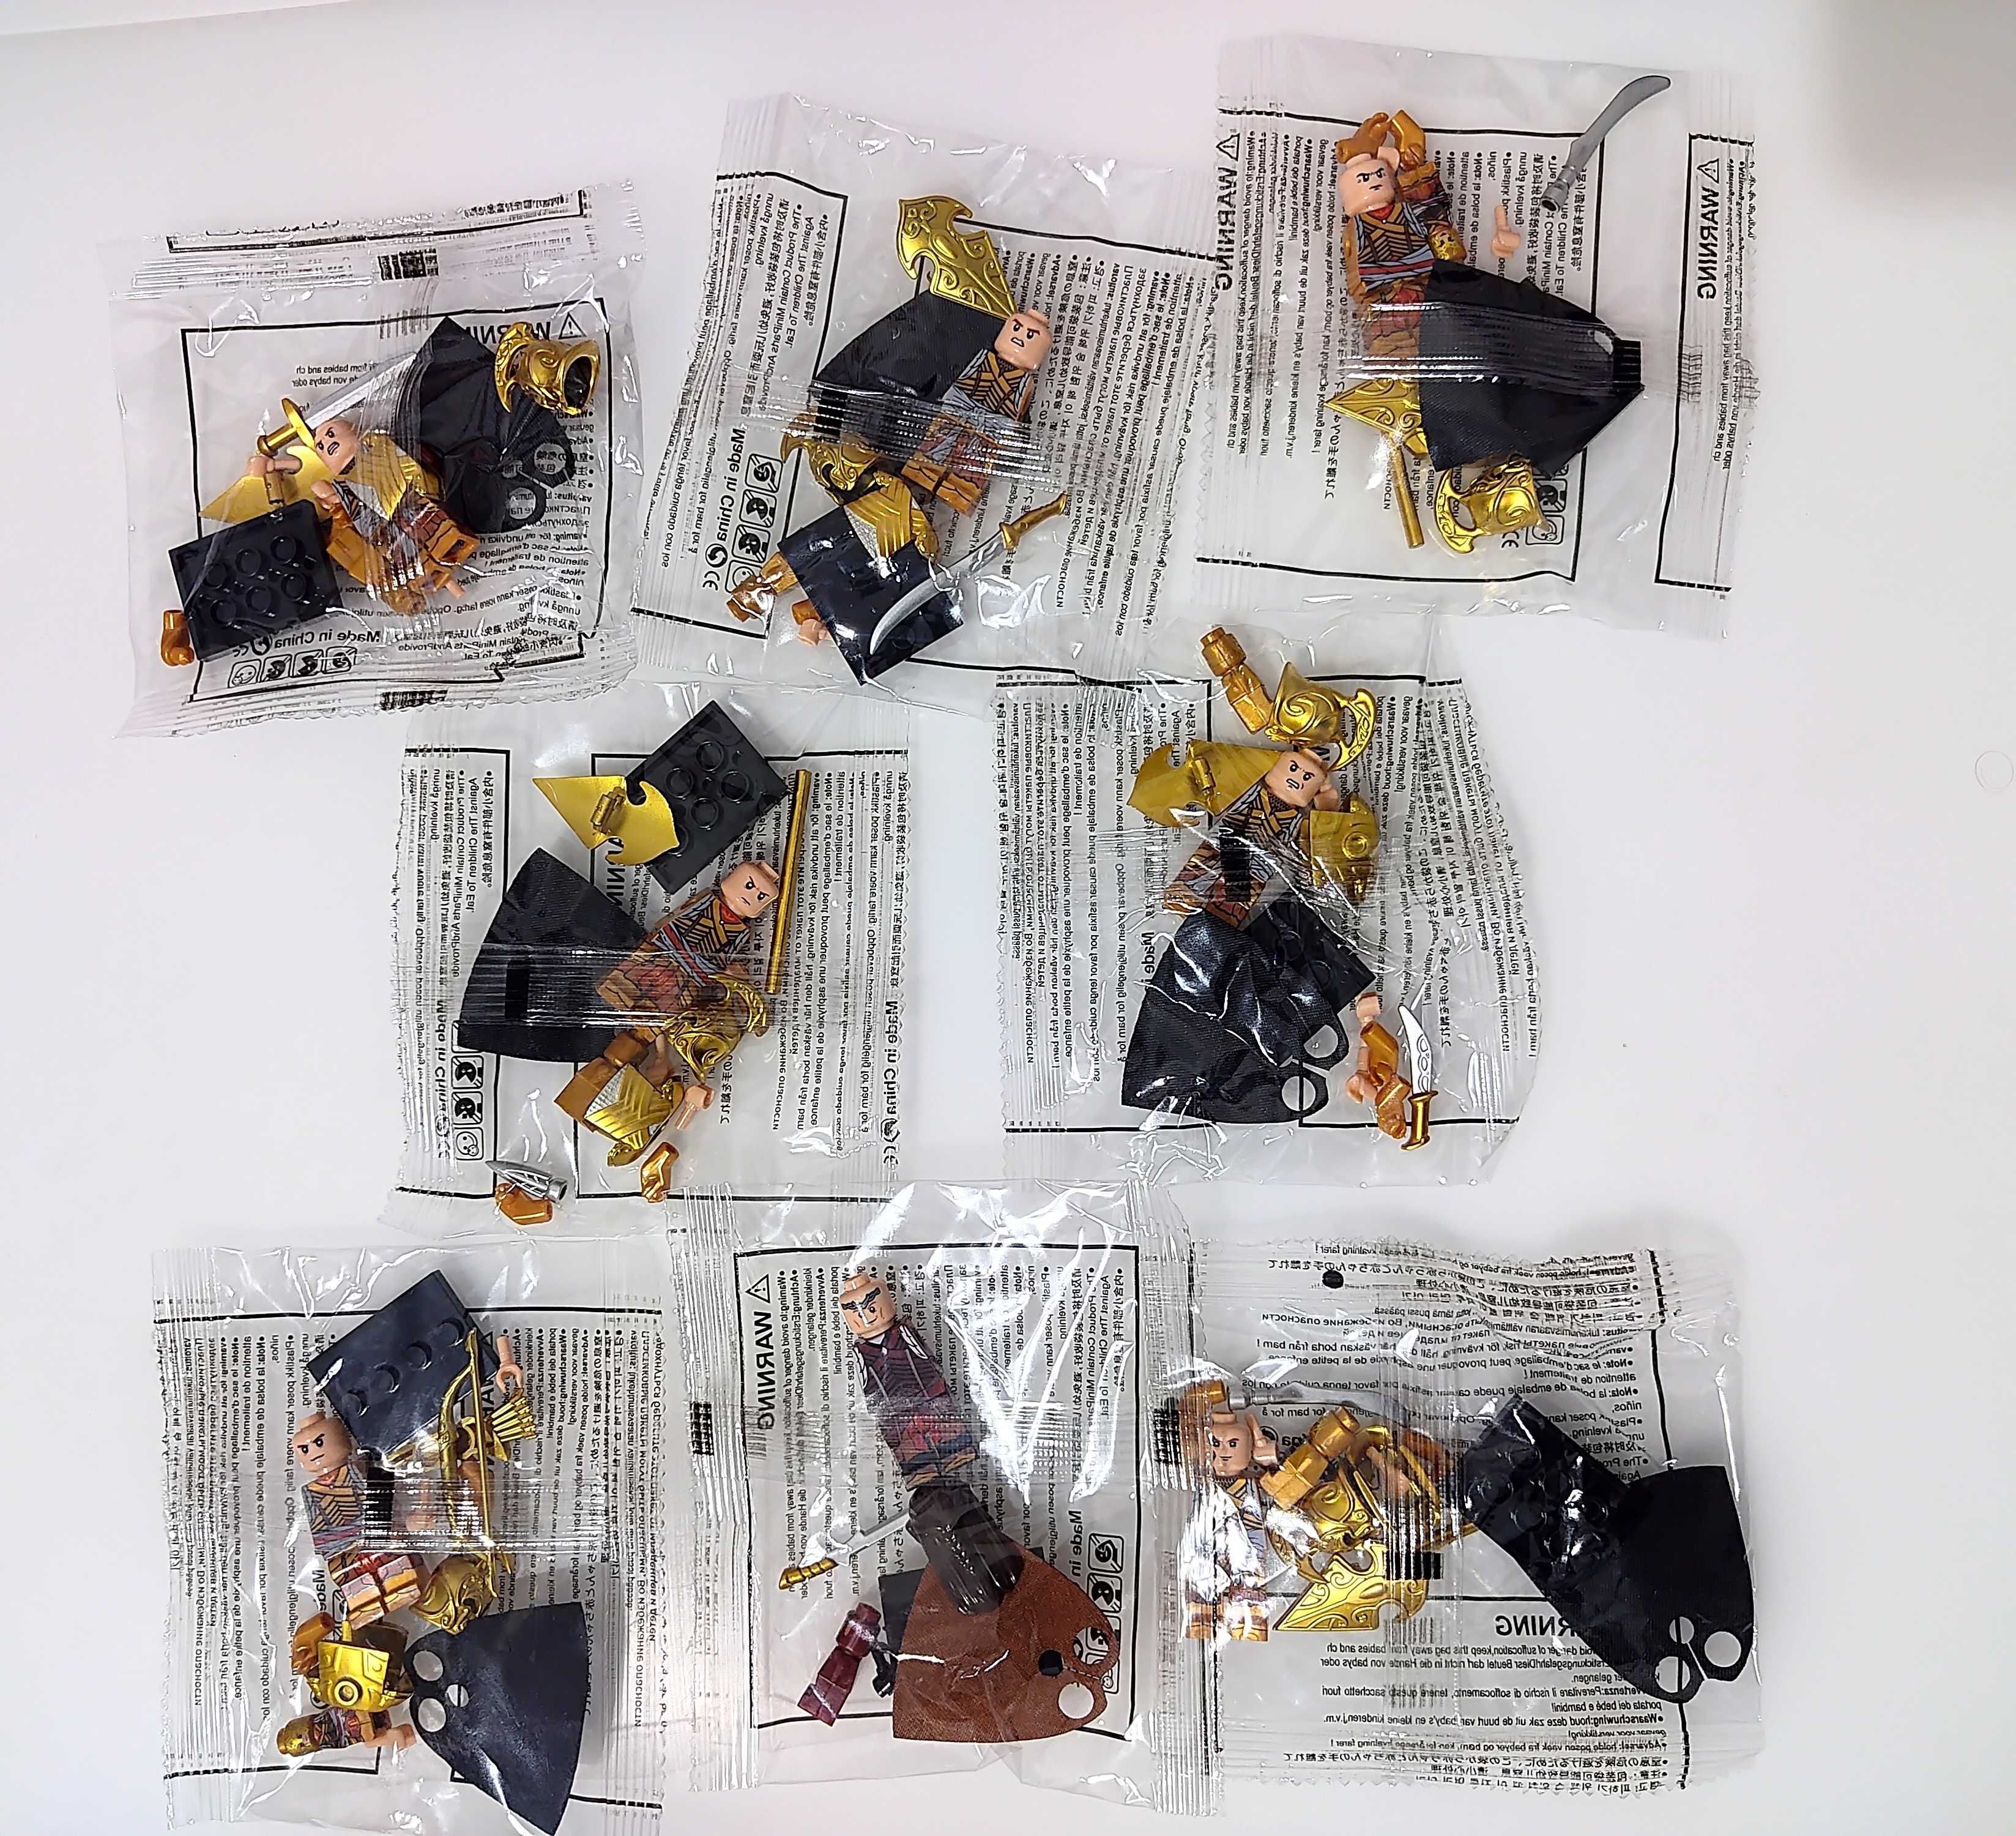 Bonecos minifiguras The Hobbit / L.O.T.R. nº24 (compatíveis com Lego)